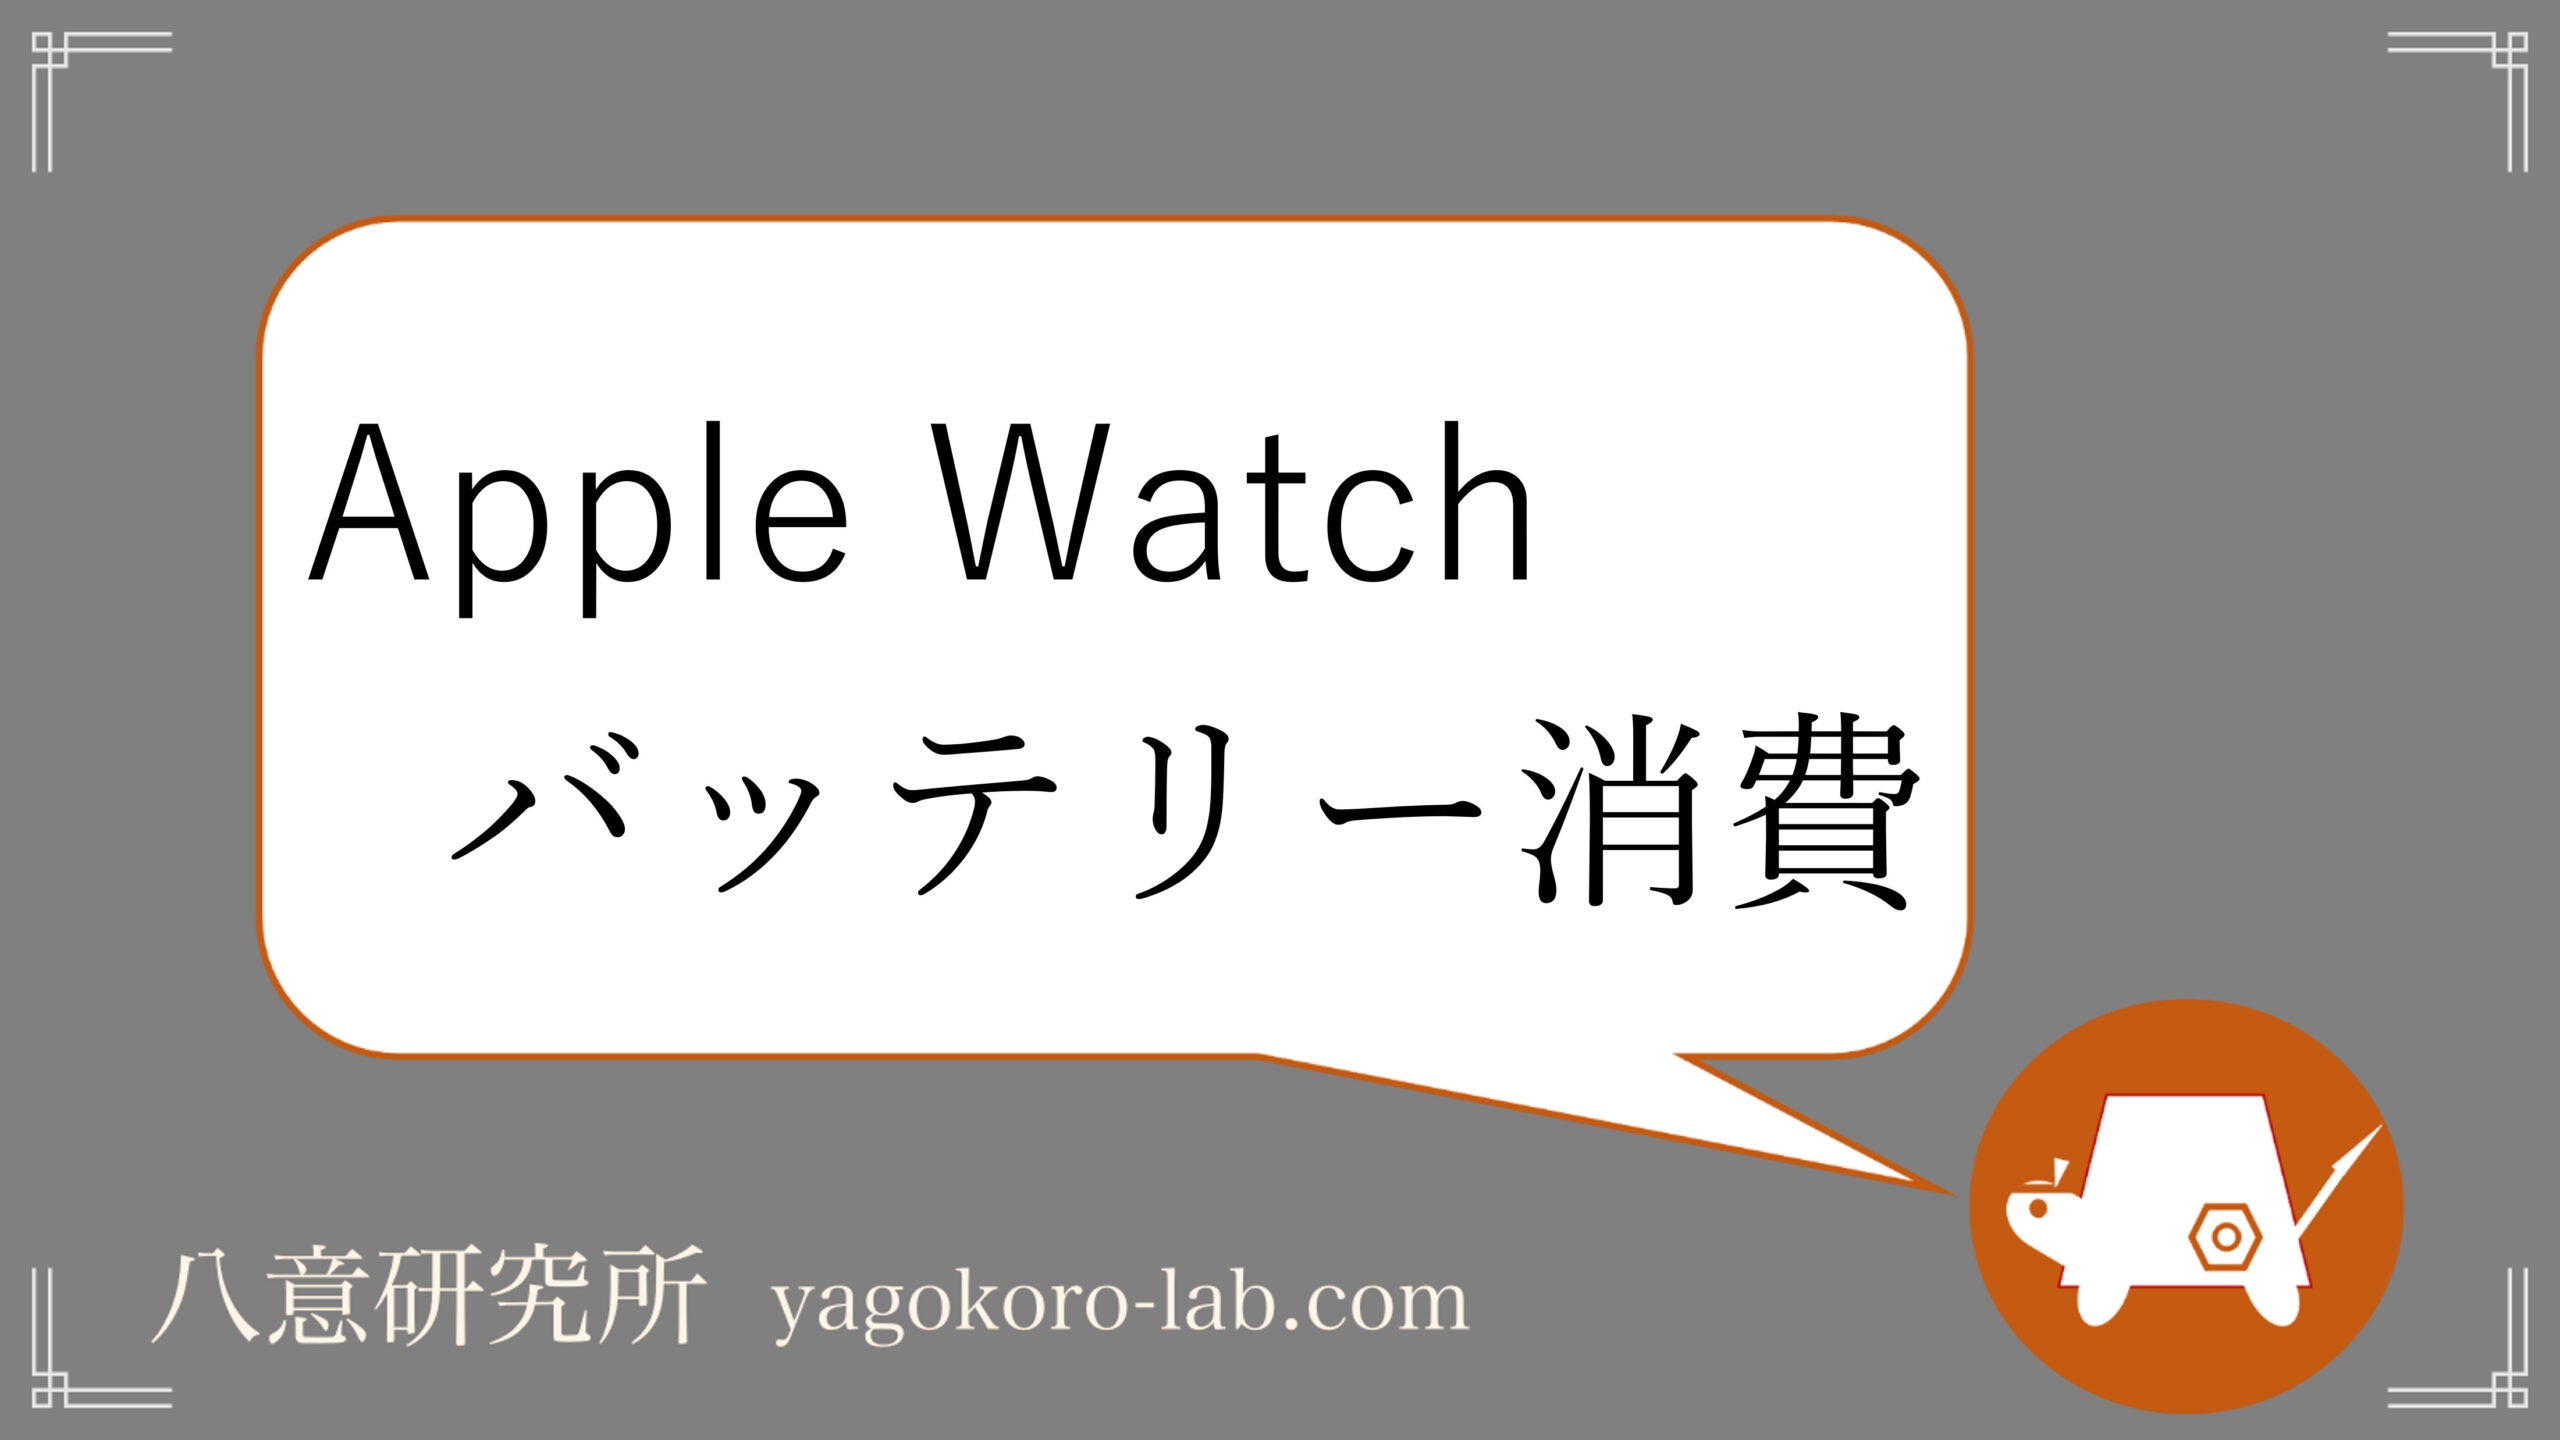 Applewatch バッテリーの減りが速い原因と対処法 代わりのスマートウォッチも ヤゴコロ研究所